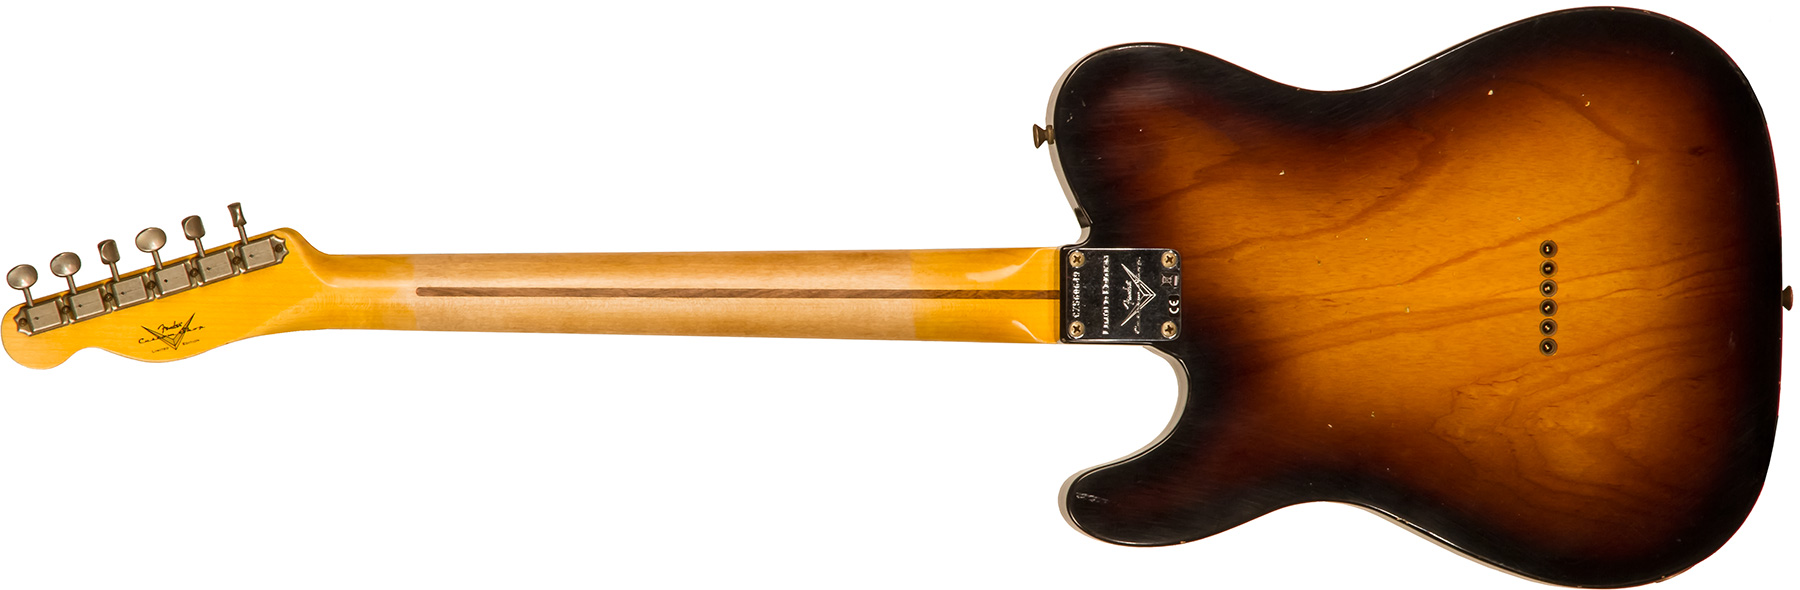 Fender Custom Shop Tele 1955 Ltd 2s Ht Mn #cz560649 - Relic Wide Fade 2-color Sunburst - Guitare Électrique Forme Tel - Variation 1